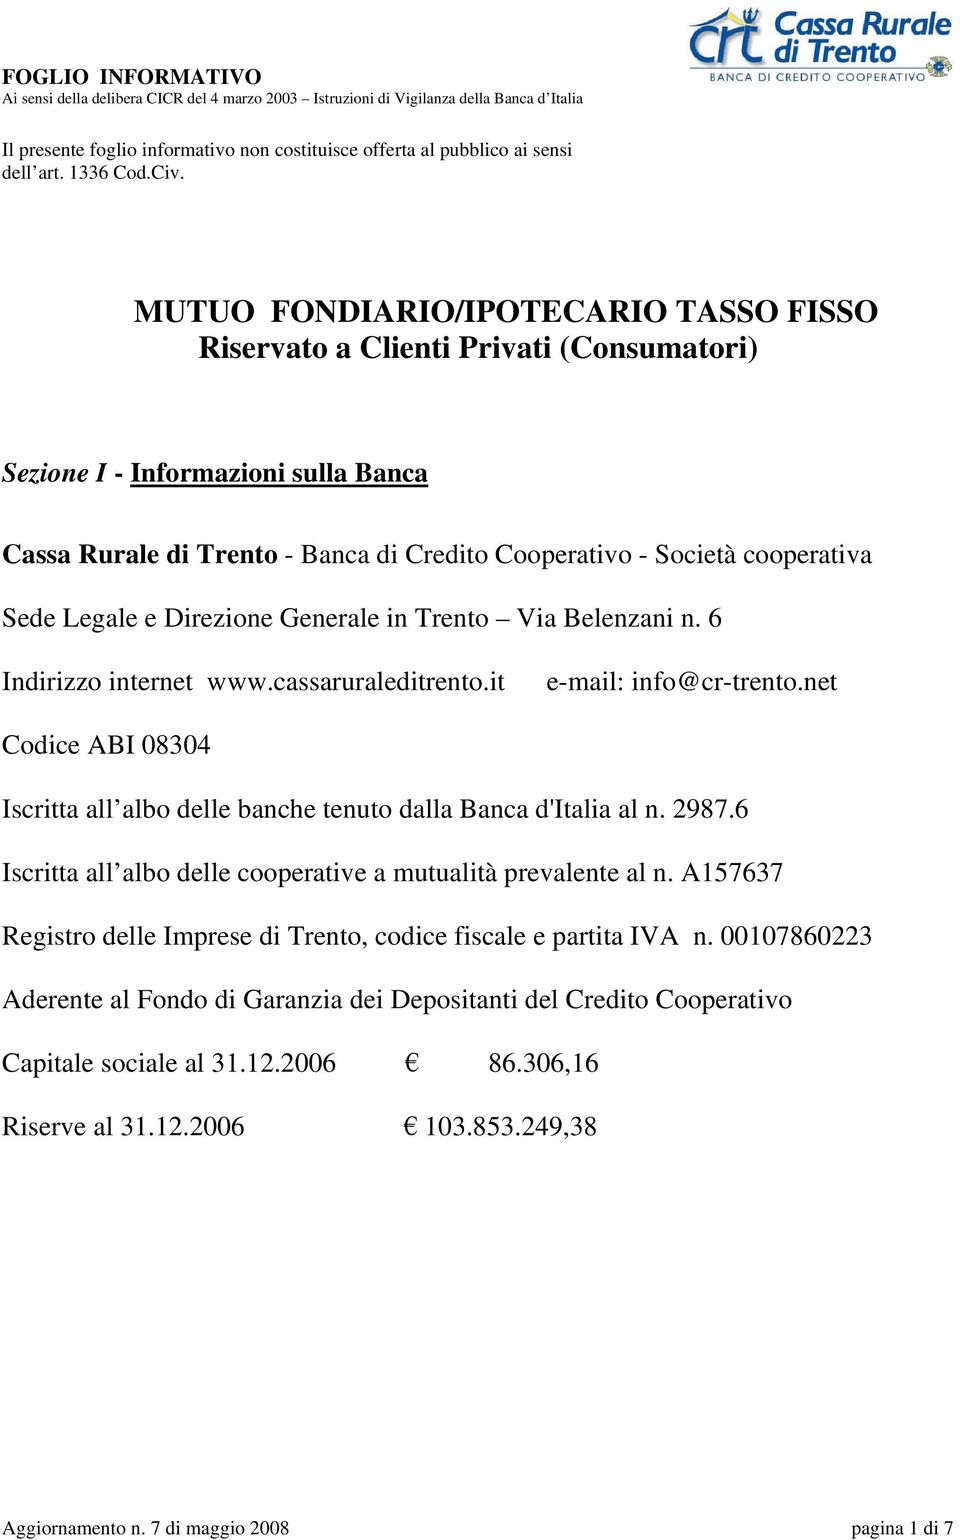 Legale e Direzione Generale in Trento Via Belenzani n. 6 Indirizzo internet www.cassaruraleditrento.it e-mail: info@cr-trento.